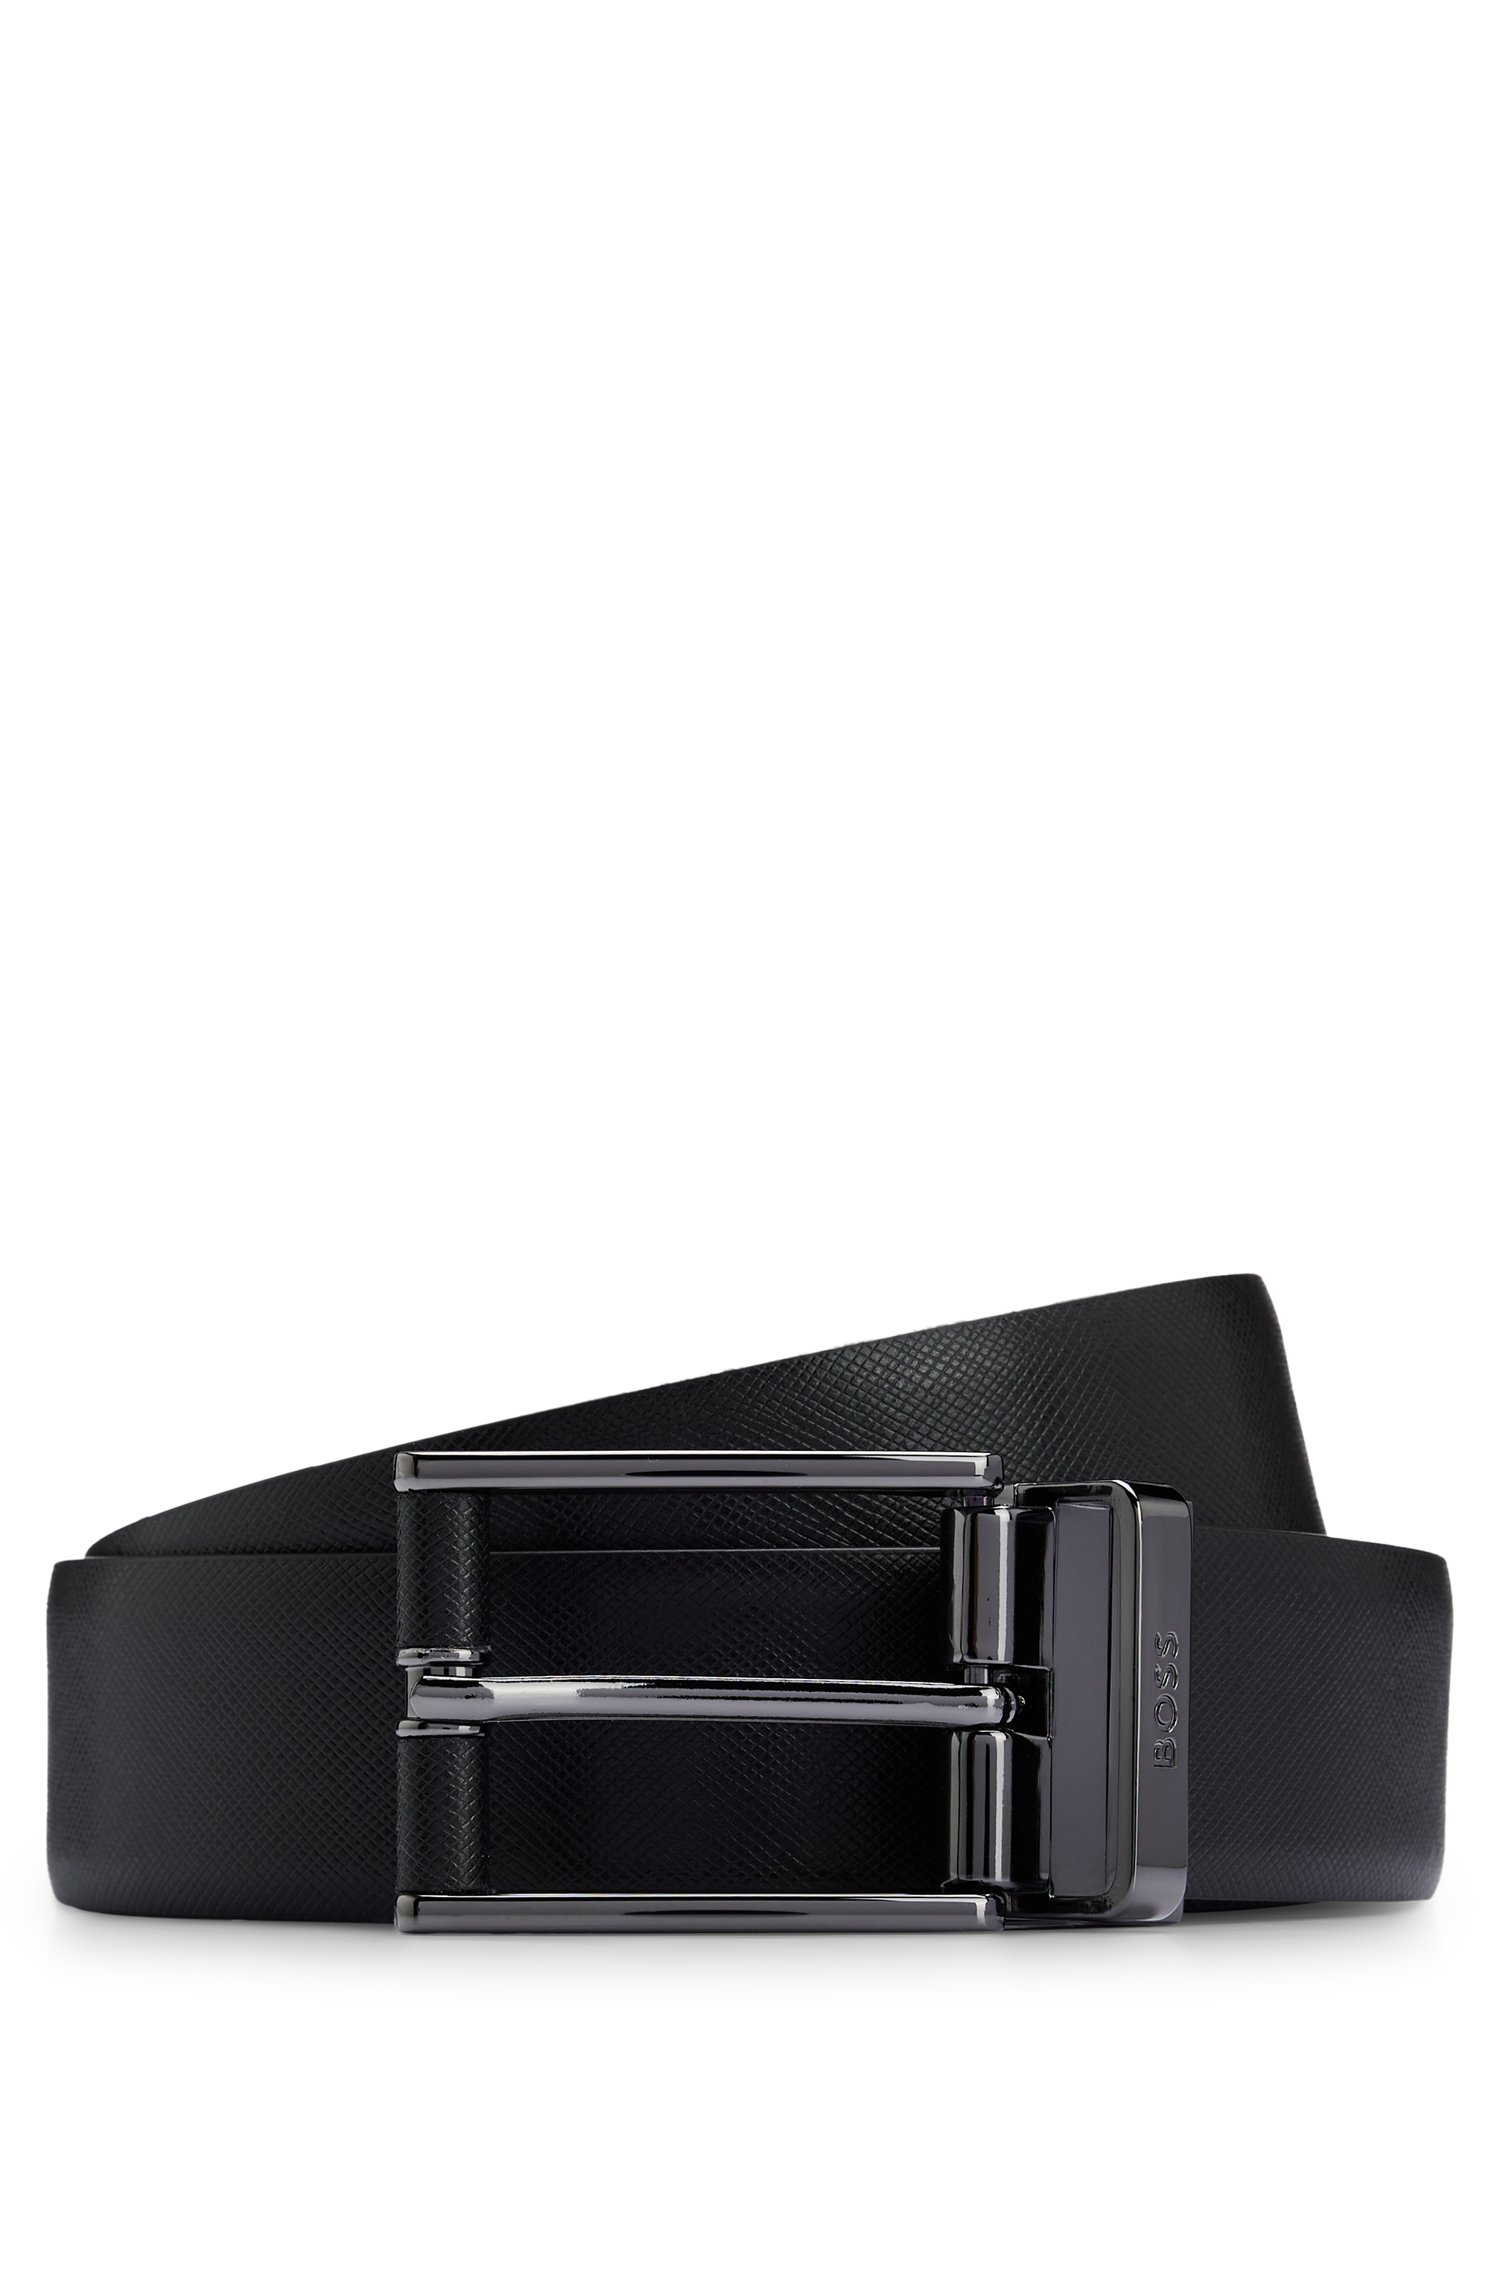 Cinturón reversible de piel italiana lisa y estructurada